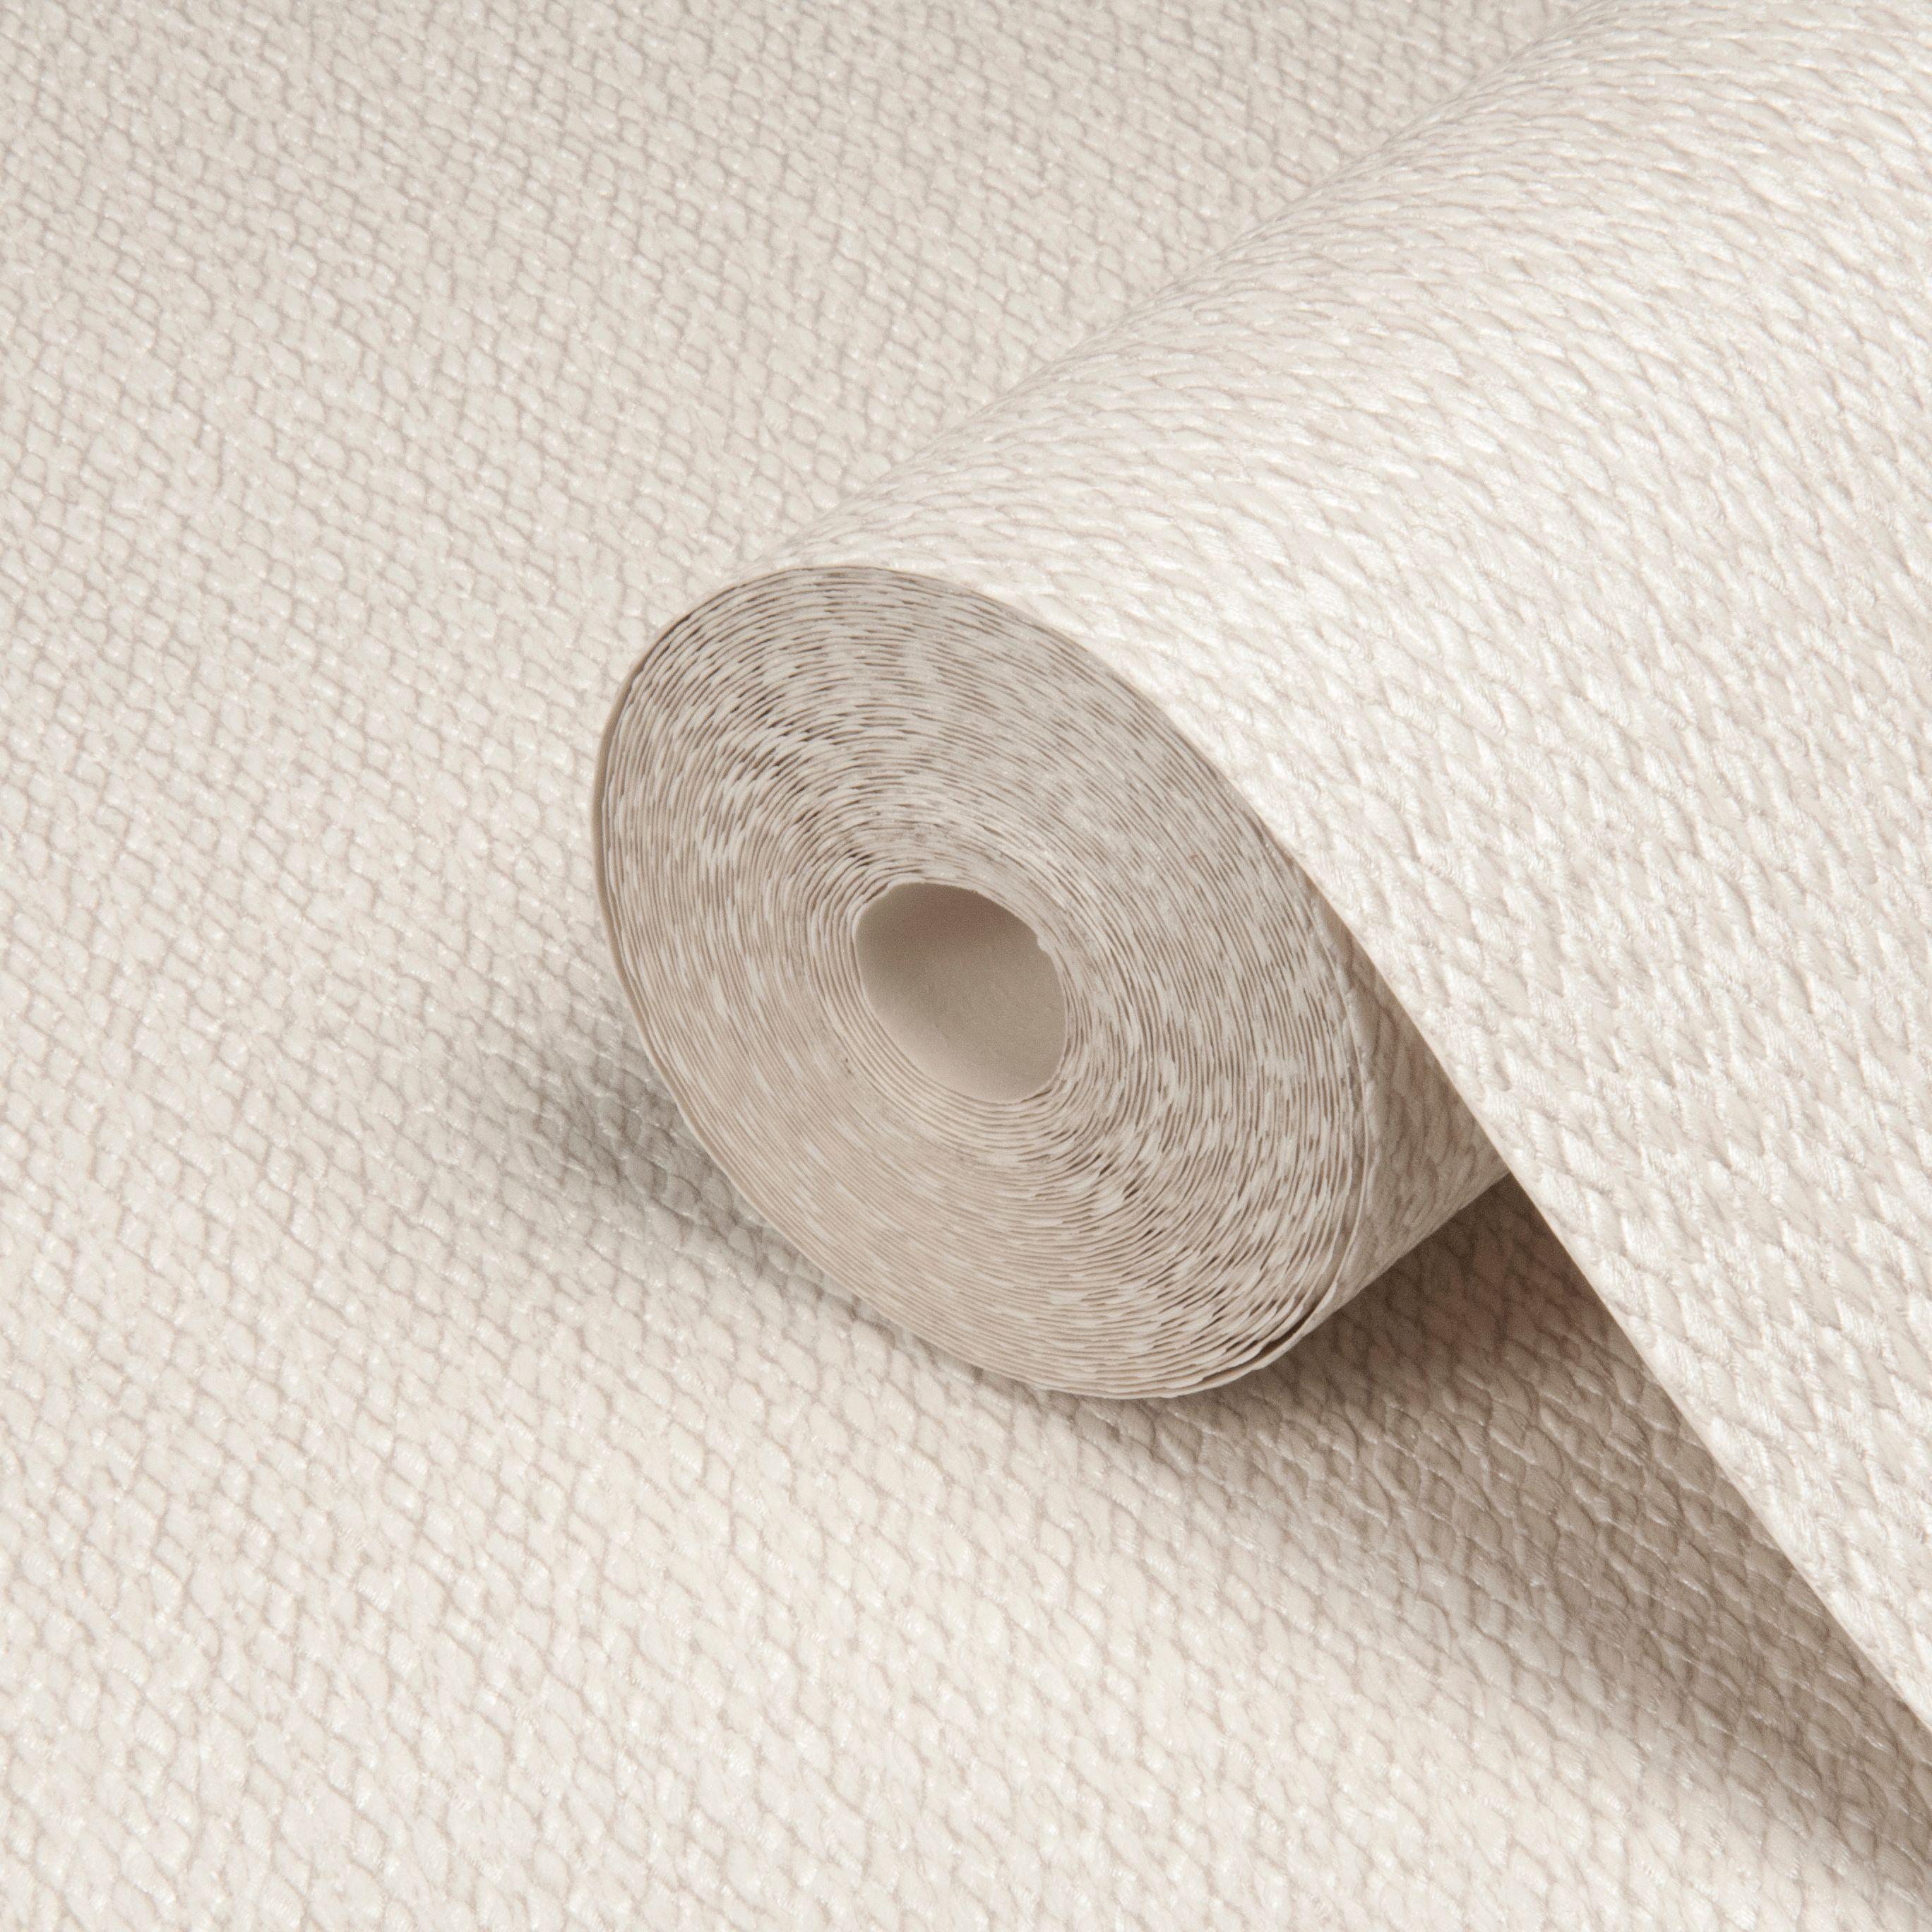 opus wallpaper,papel higiénico,papel,producto de papel,textil,beige